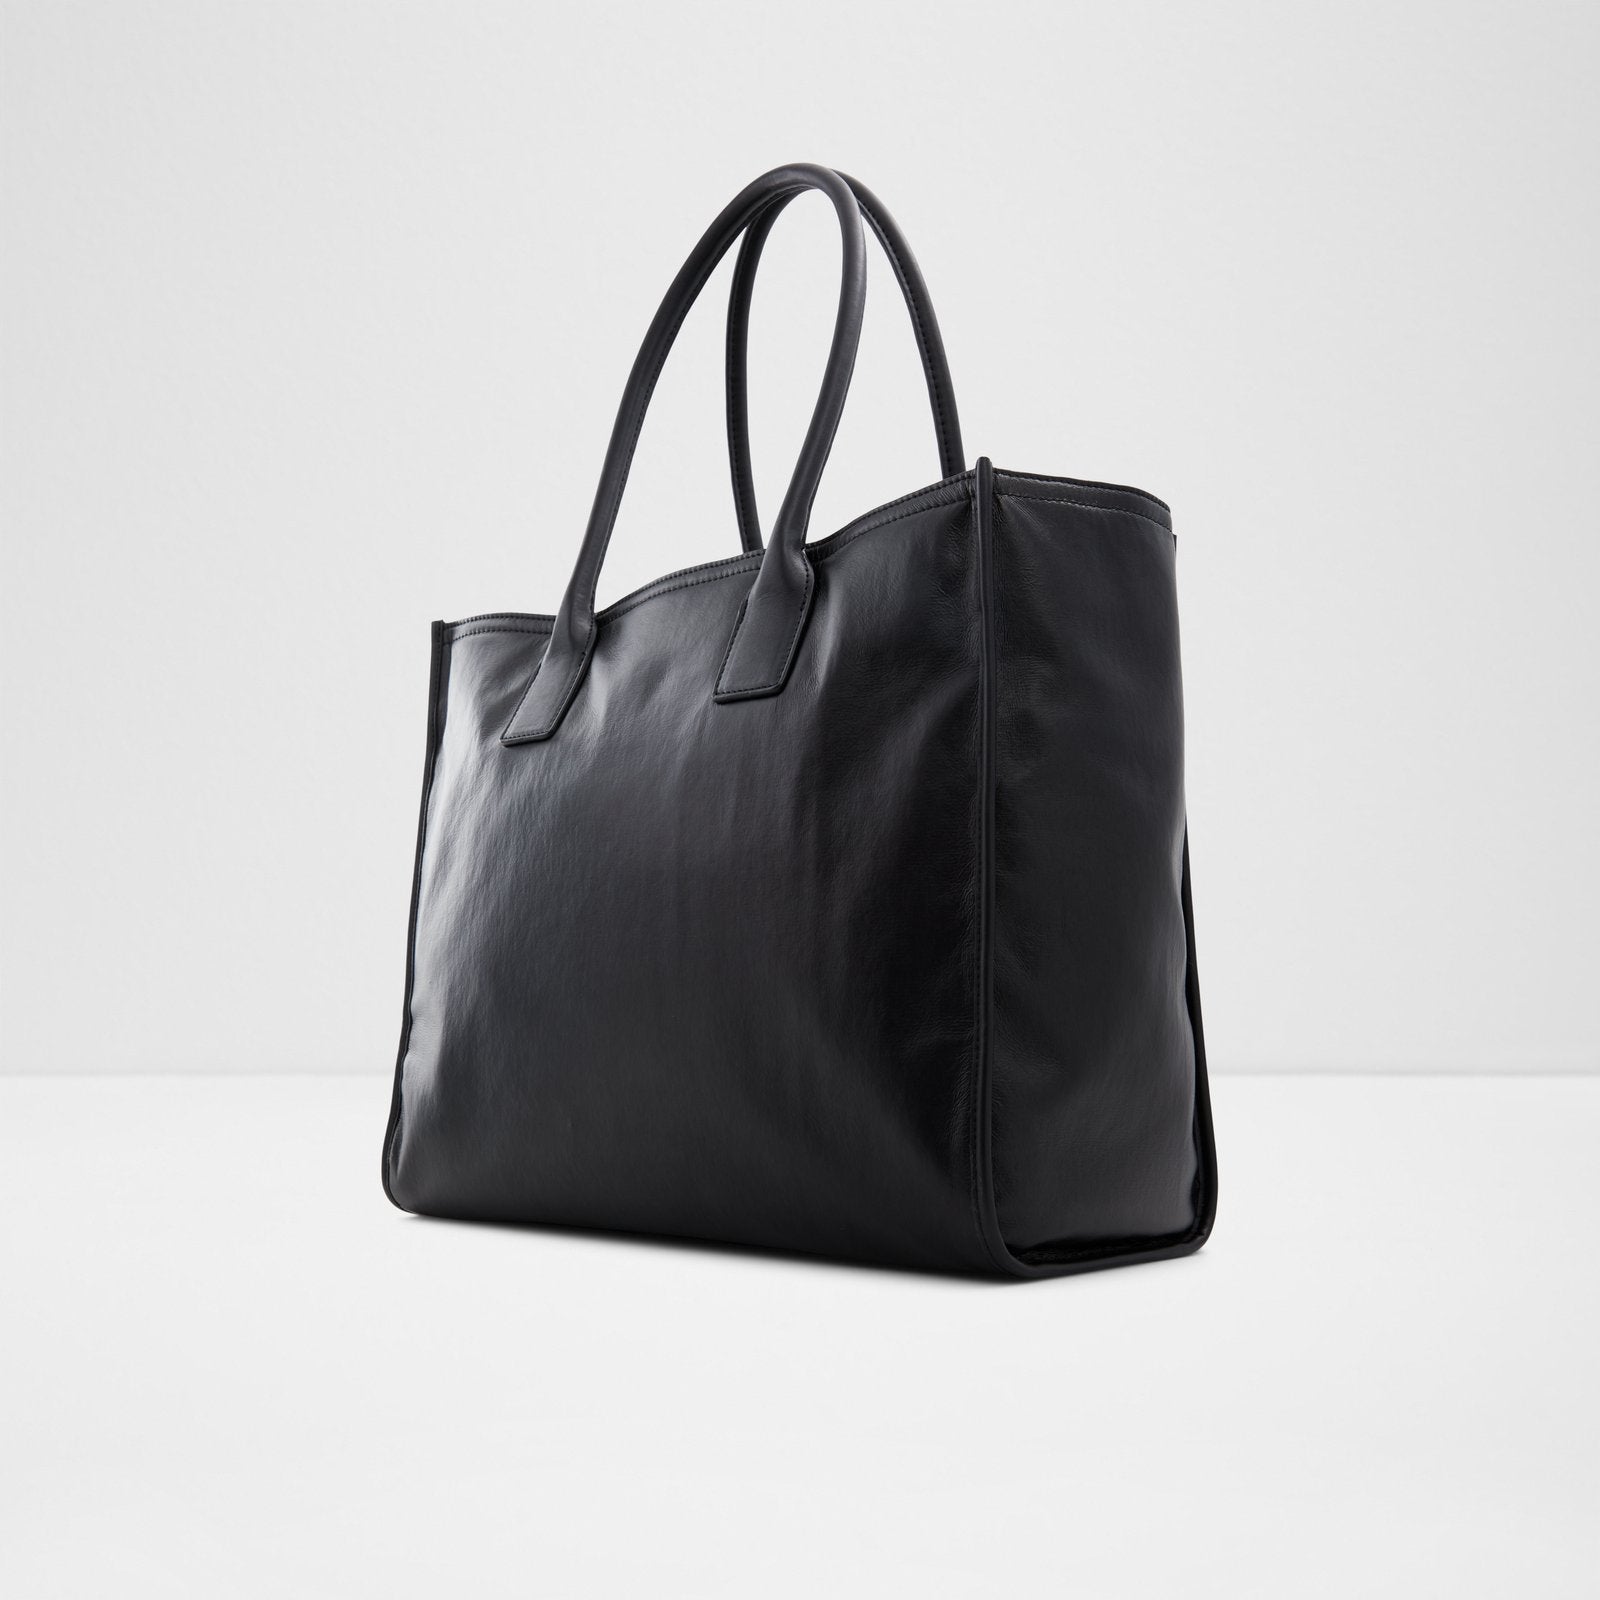 Myeverything Bag - Black - ALDO KSA